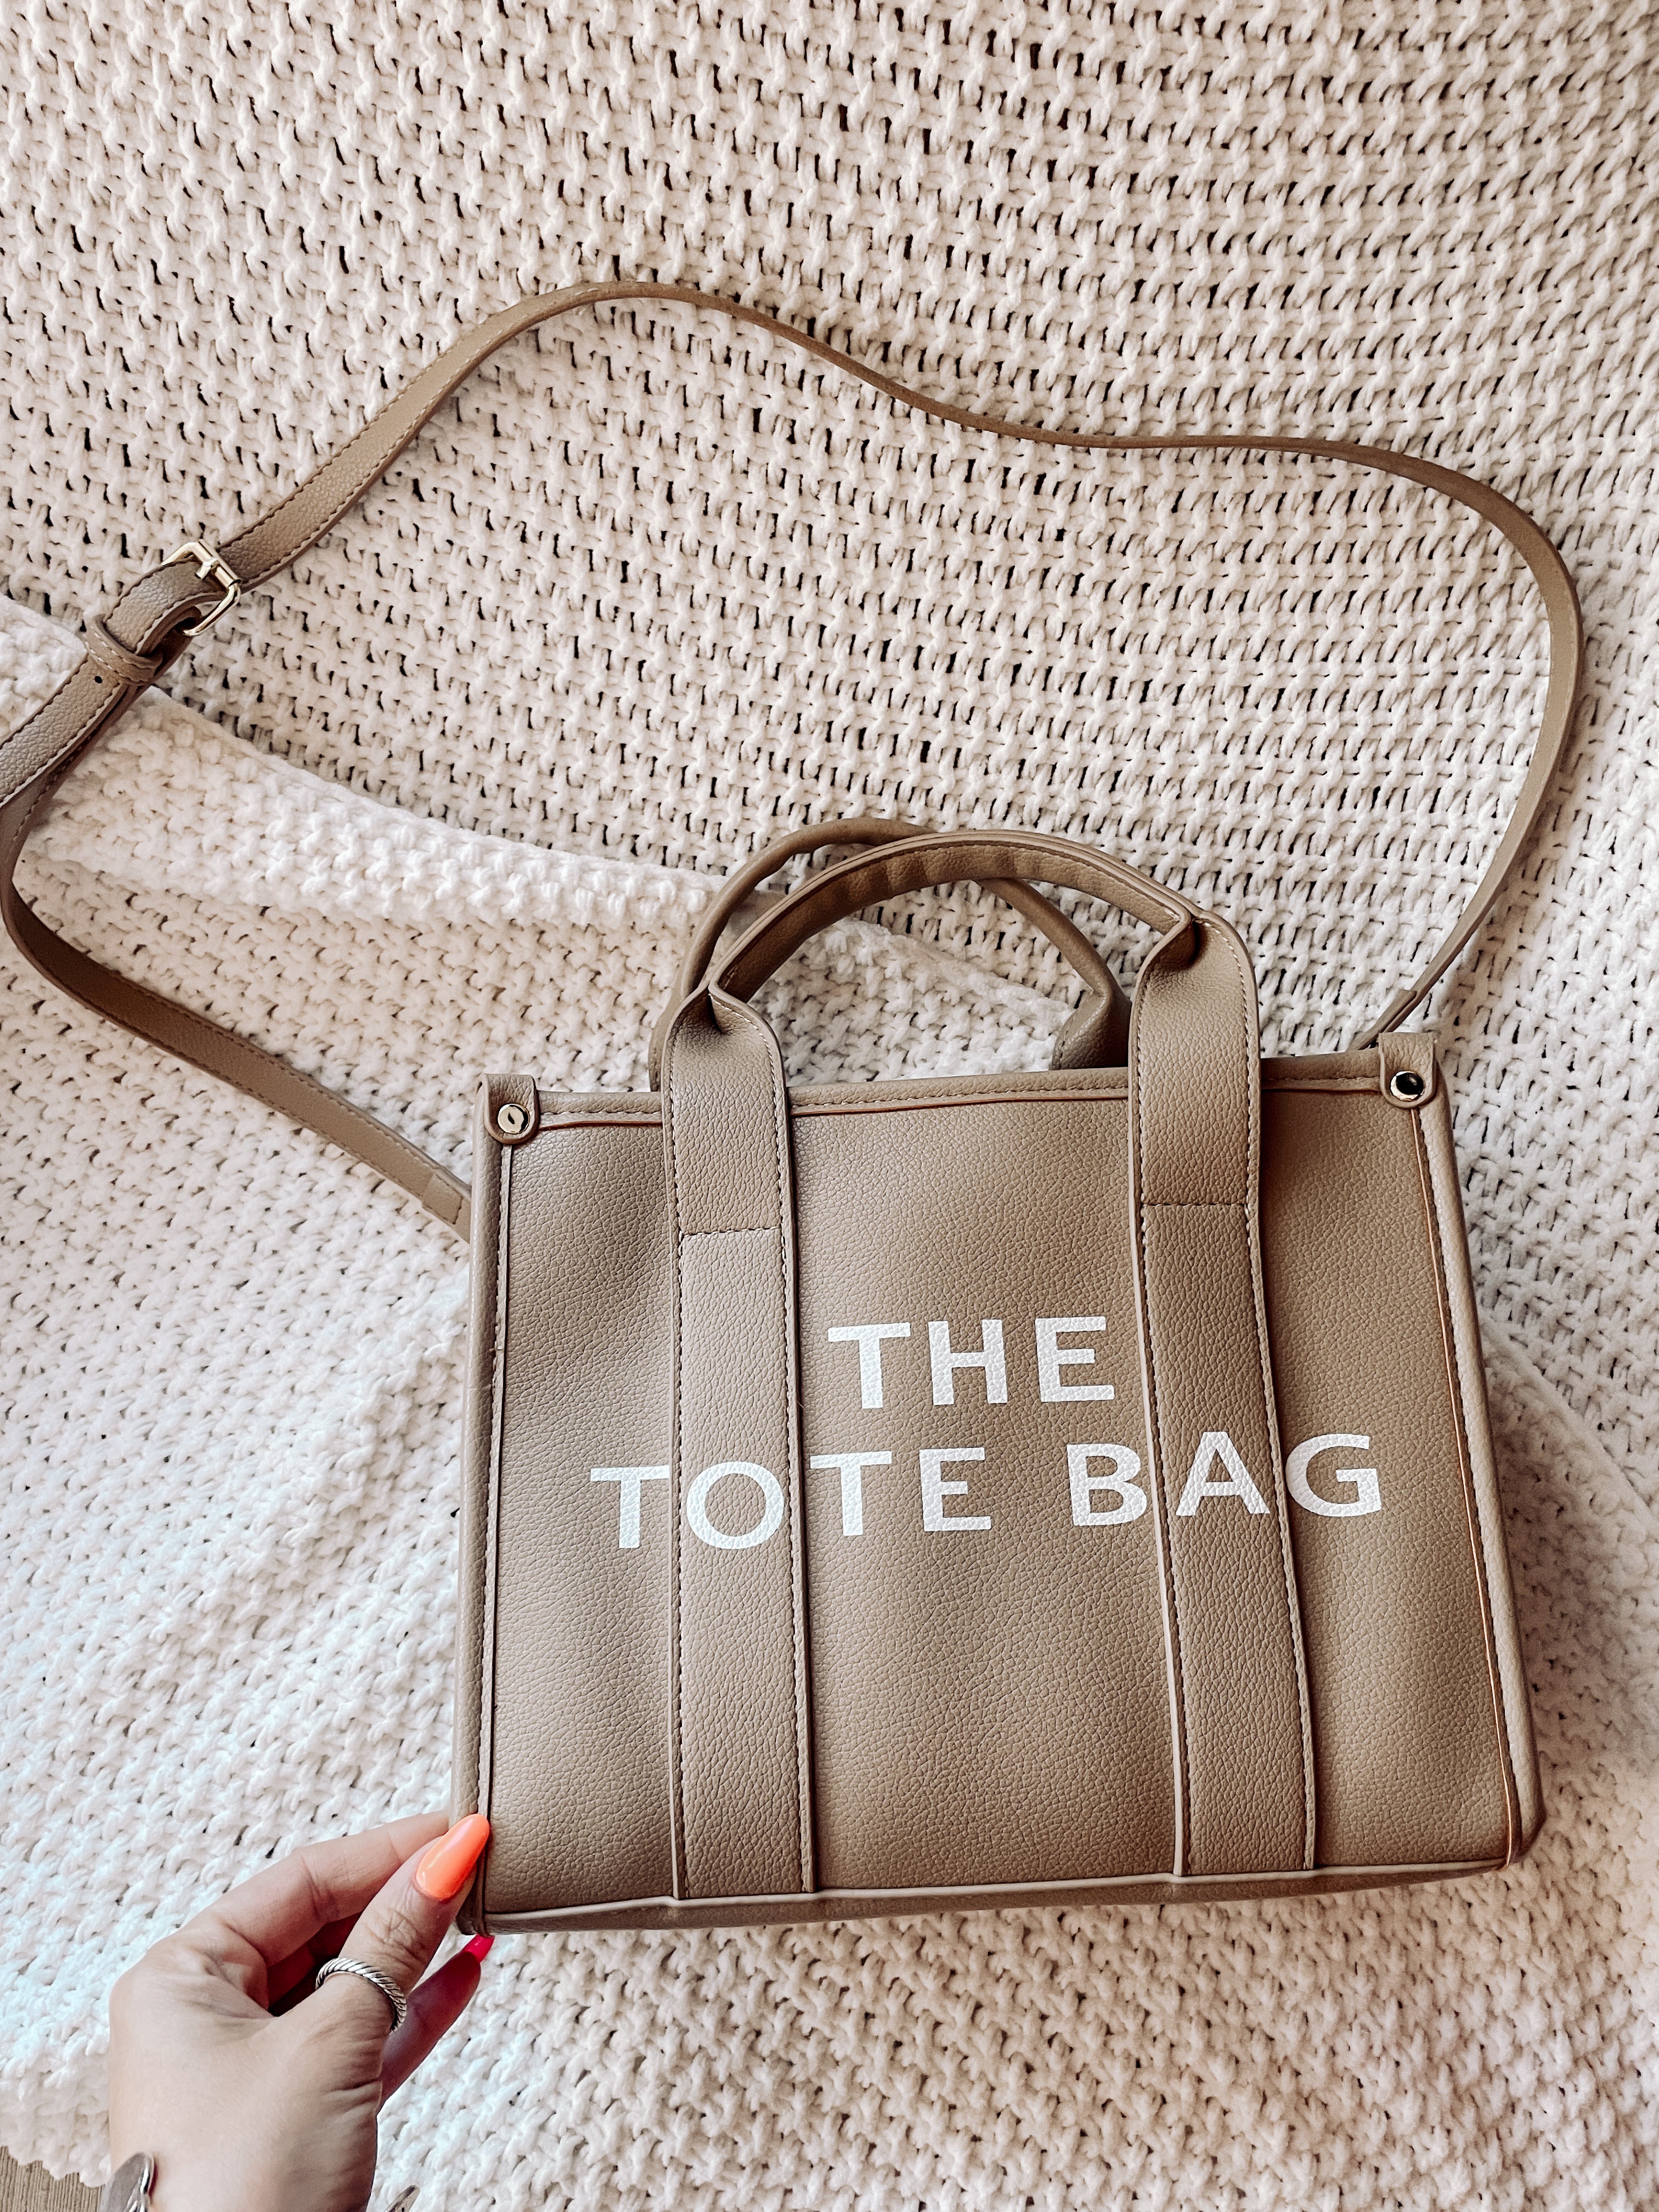 The Tote Bag (Tan)